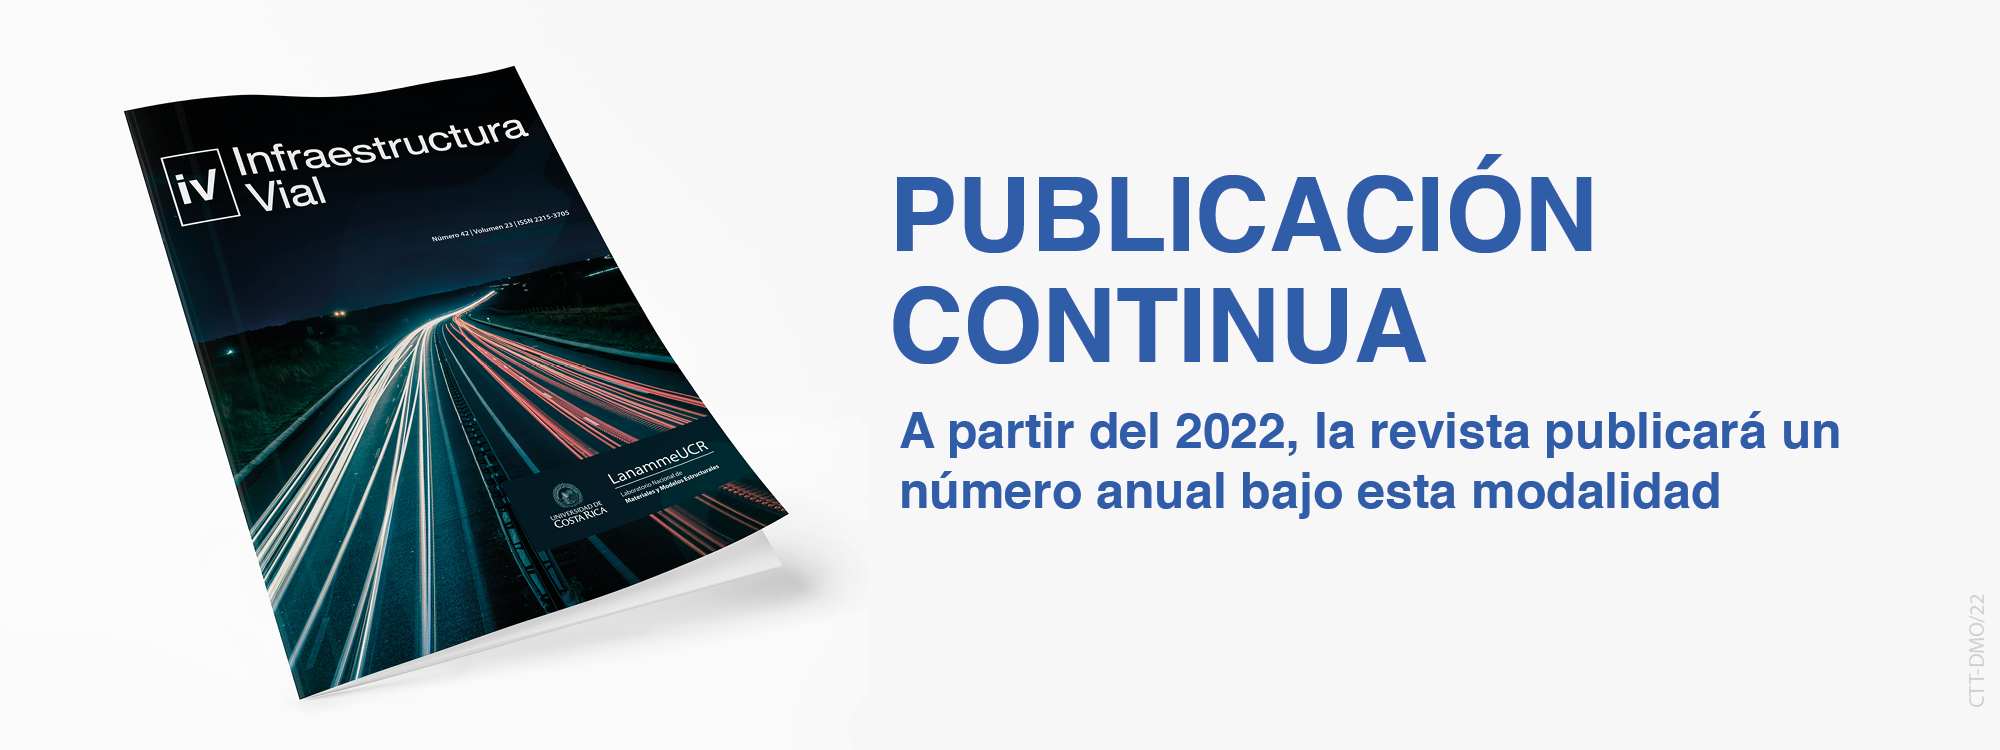 banner_portal_publicacion_continua_2022.